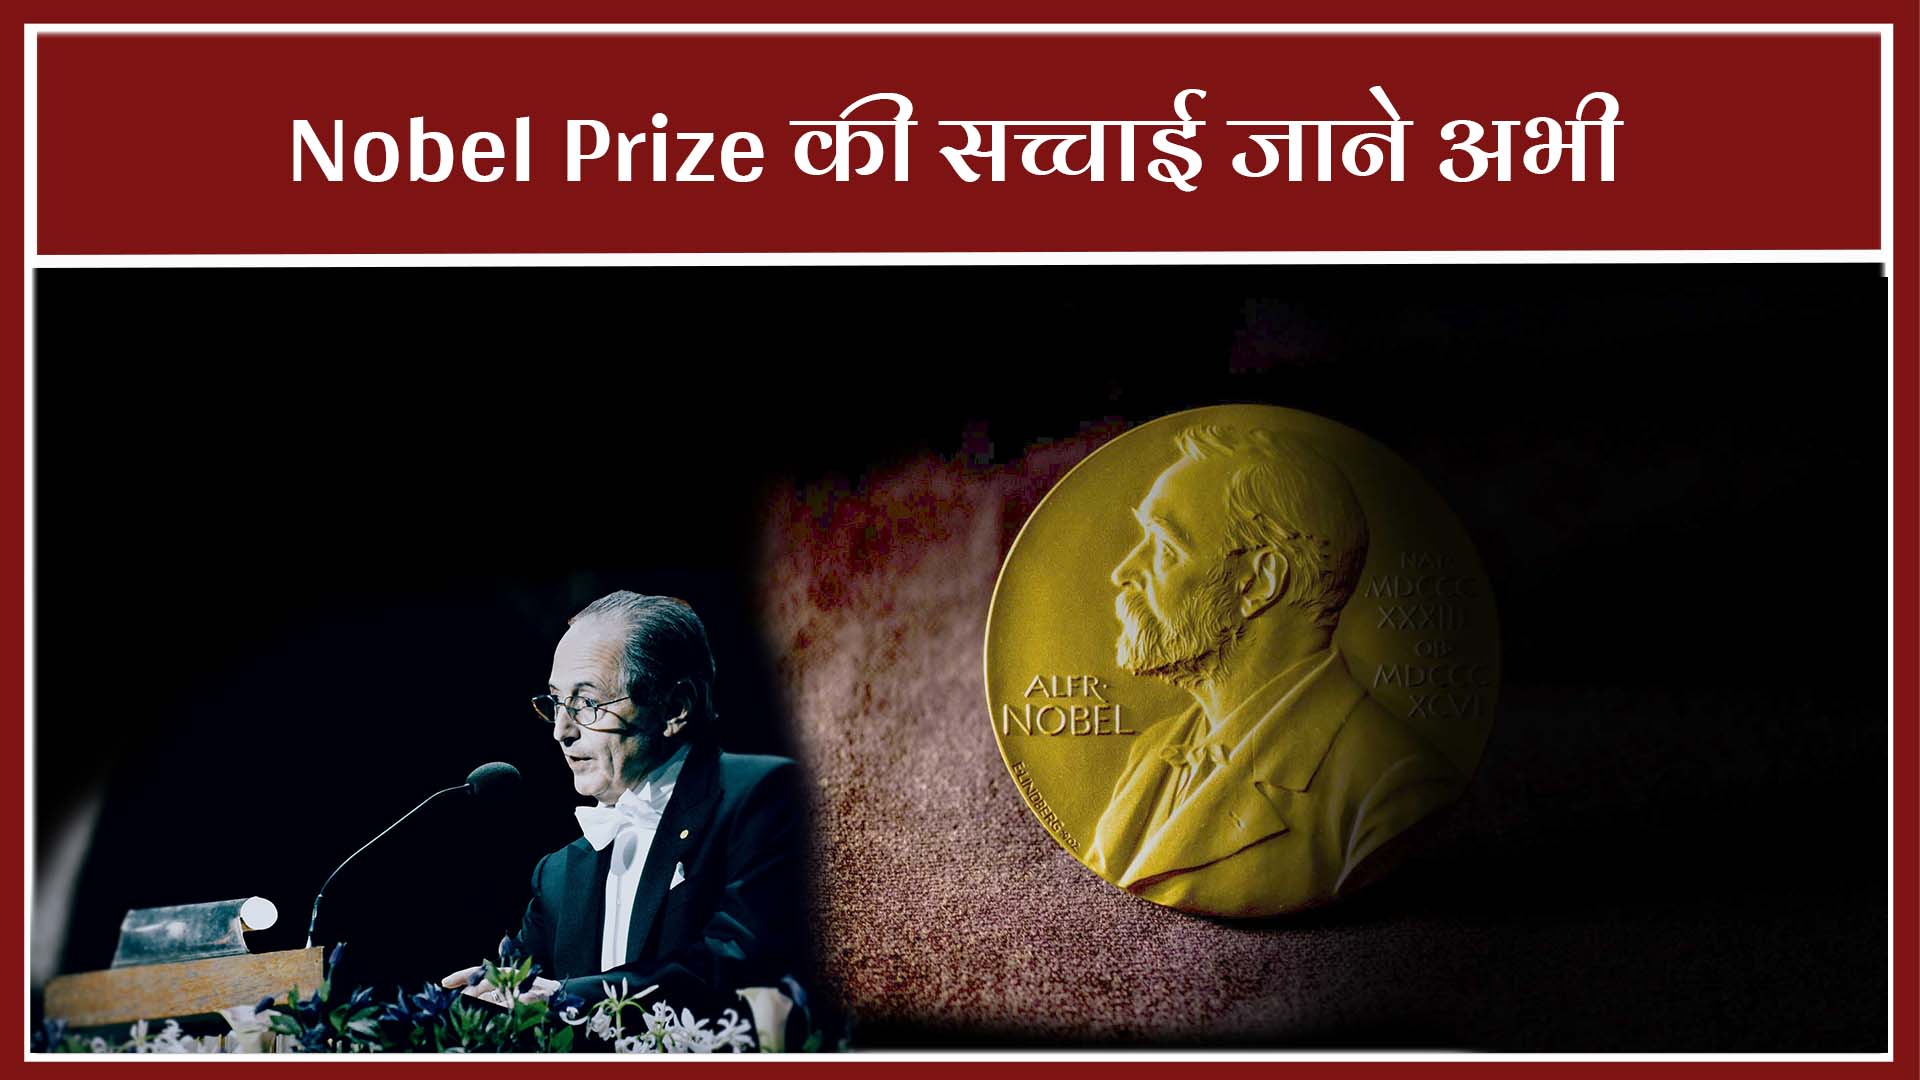 Nobel Prize – कैसी हुई नोबल  पुरस्कार की शुरुआत